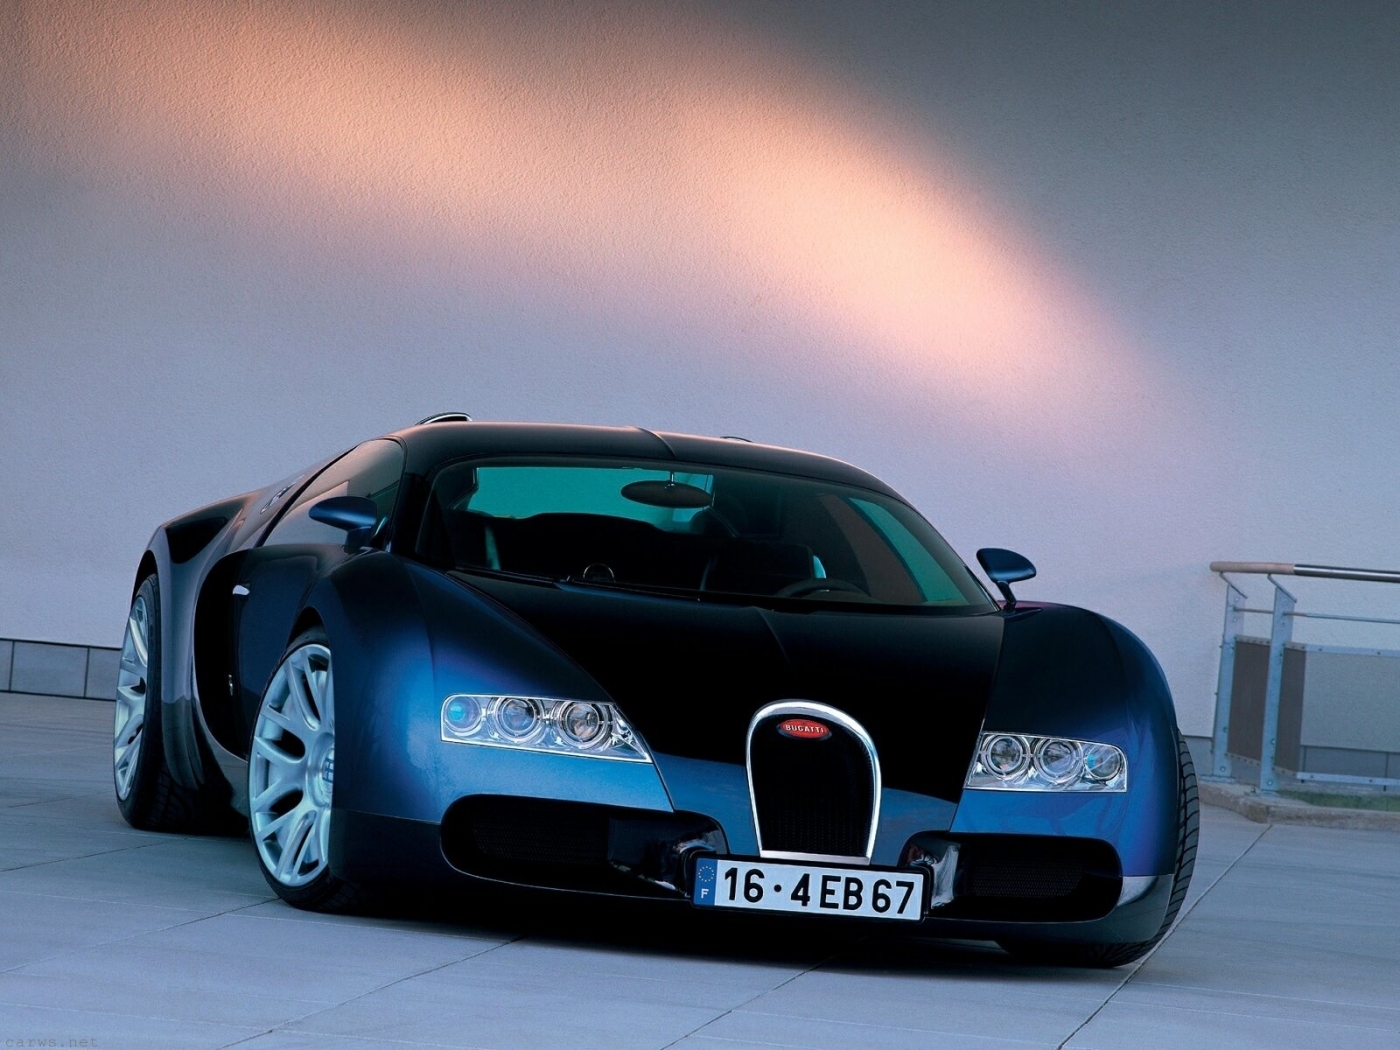 Скачать картинку Бугатти (Bugatti), Транспорт, Машины в телефон бесплатно.